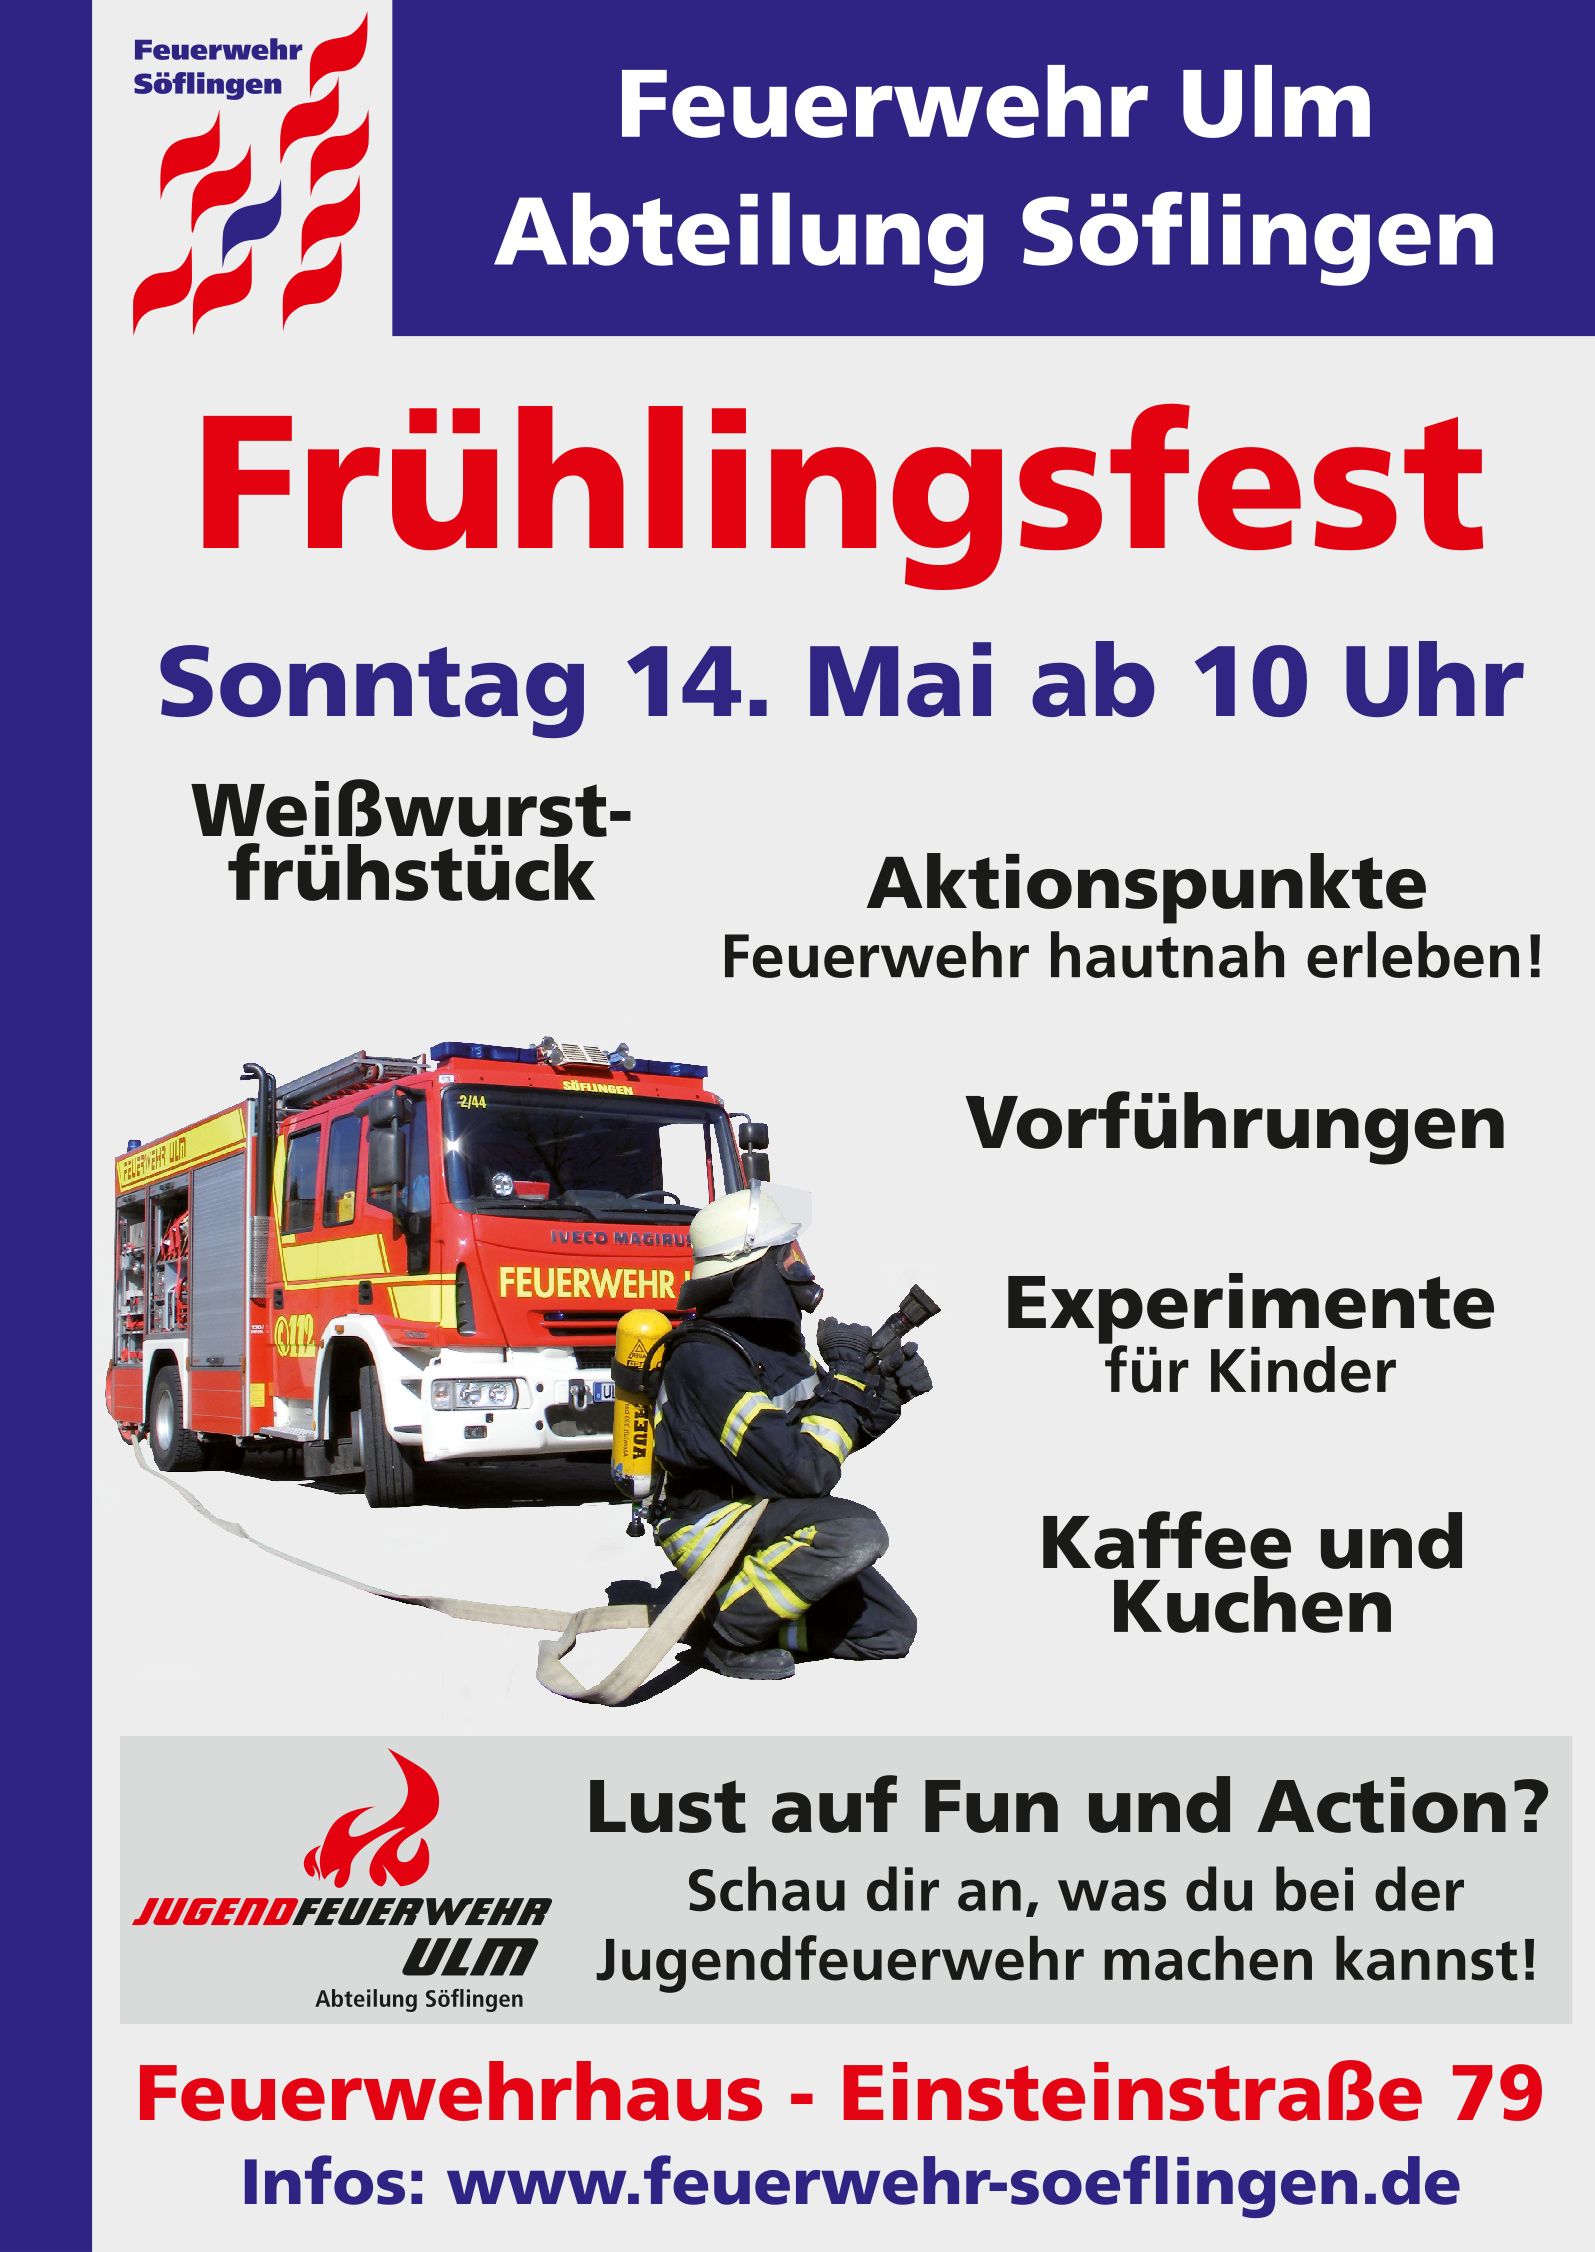 Fruhlingsfest 17 Flyer Feuerwehr Ulm